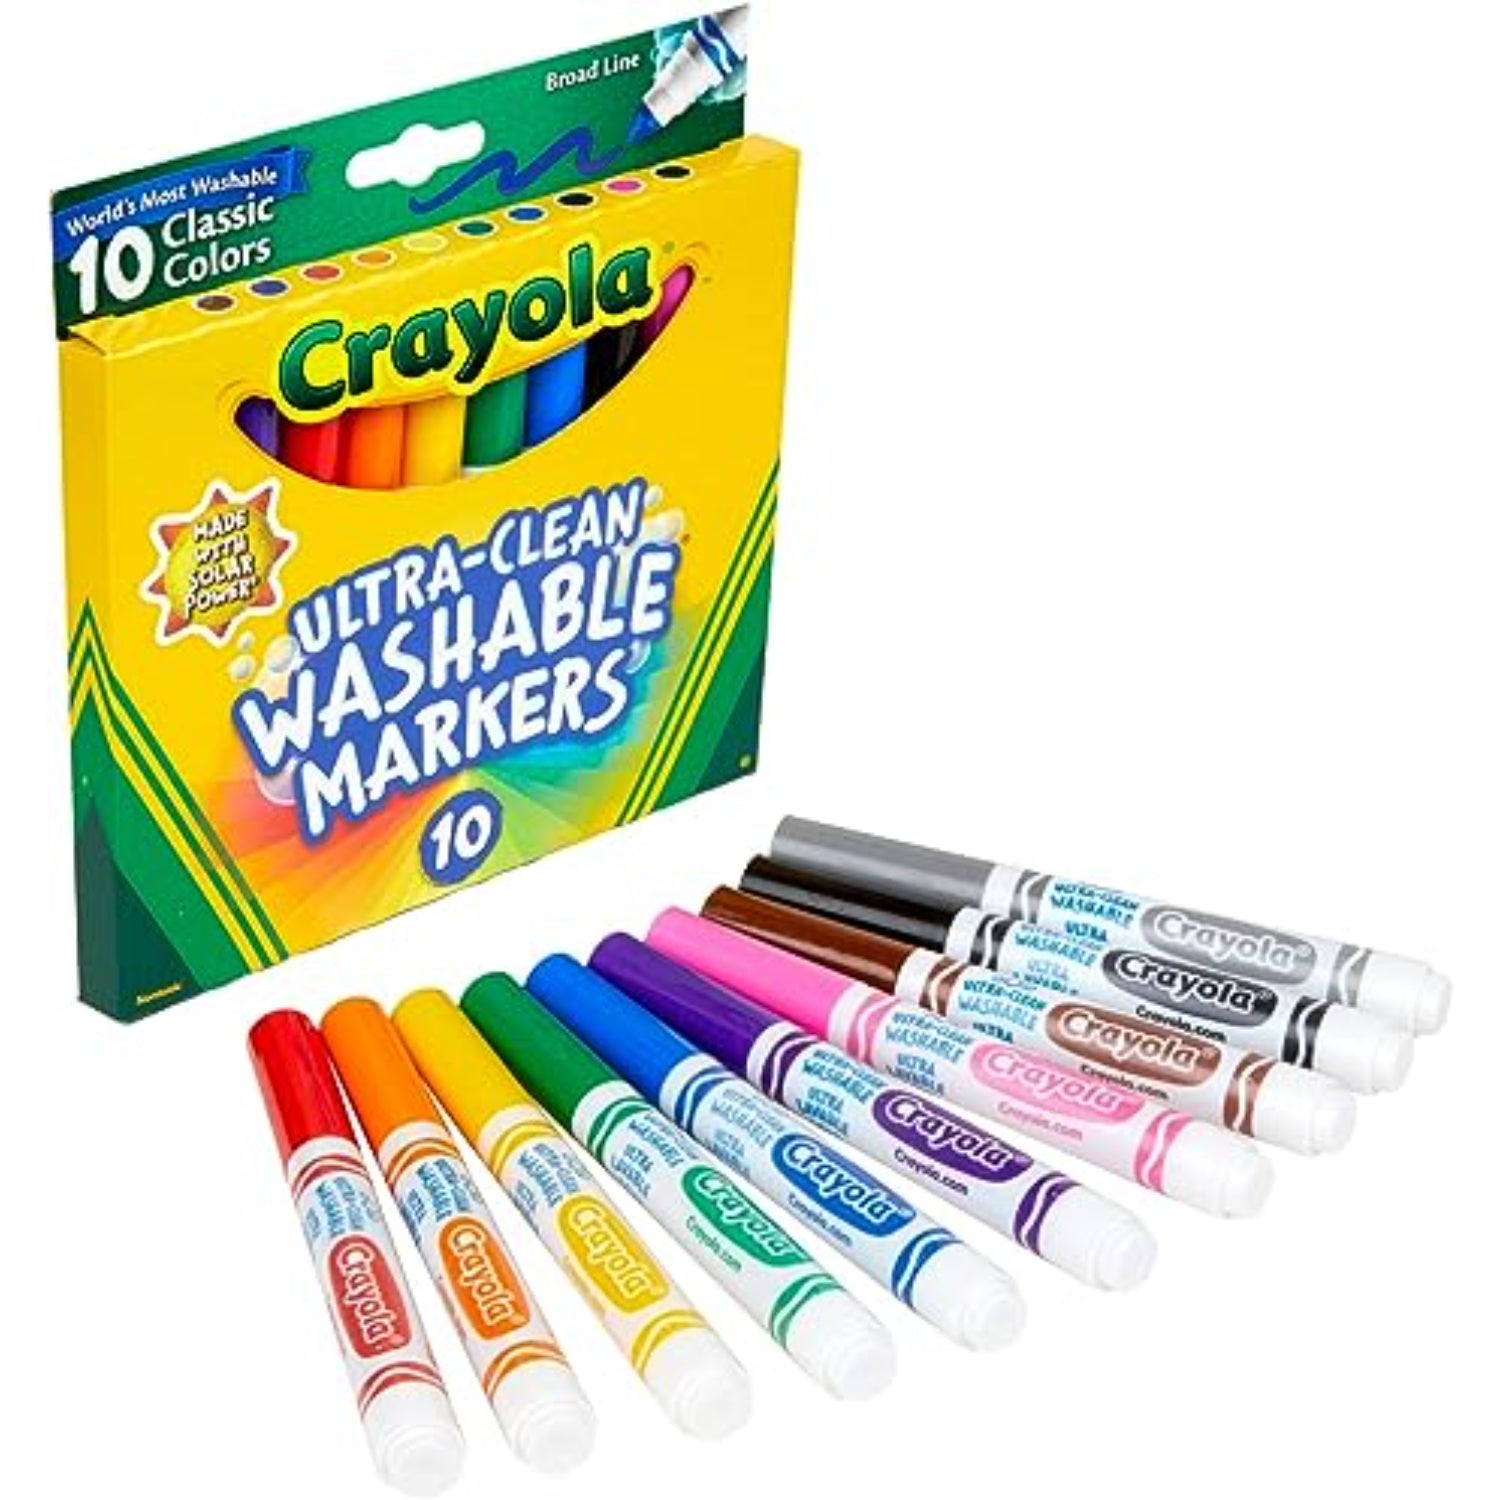 Kids Washable Markers, Fine Tip - Set of 42  Kids school supplies, Washable  markers, Kids art supplies